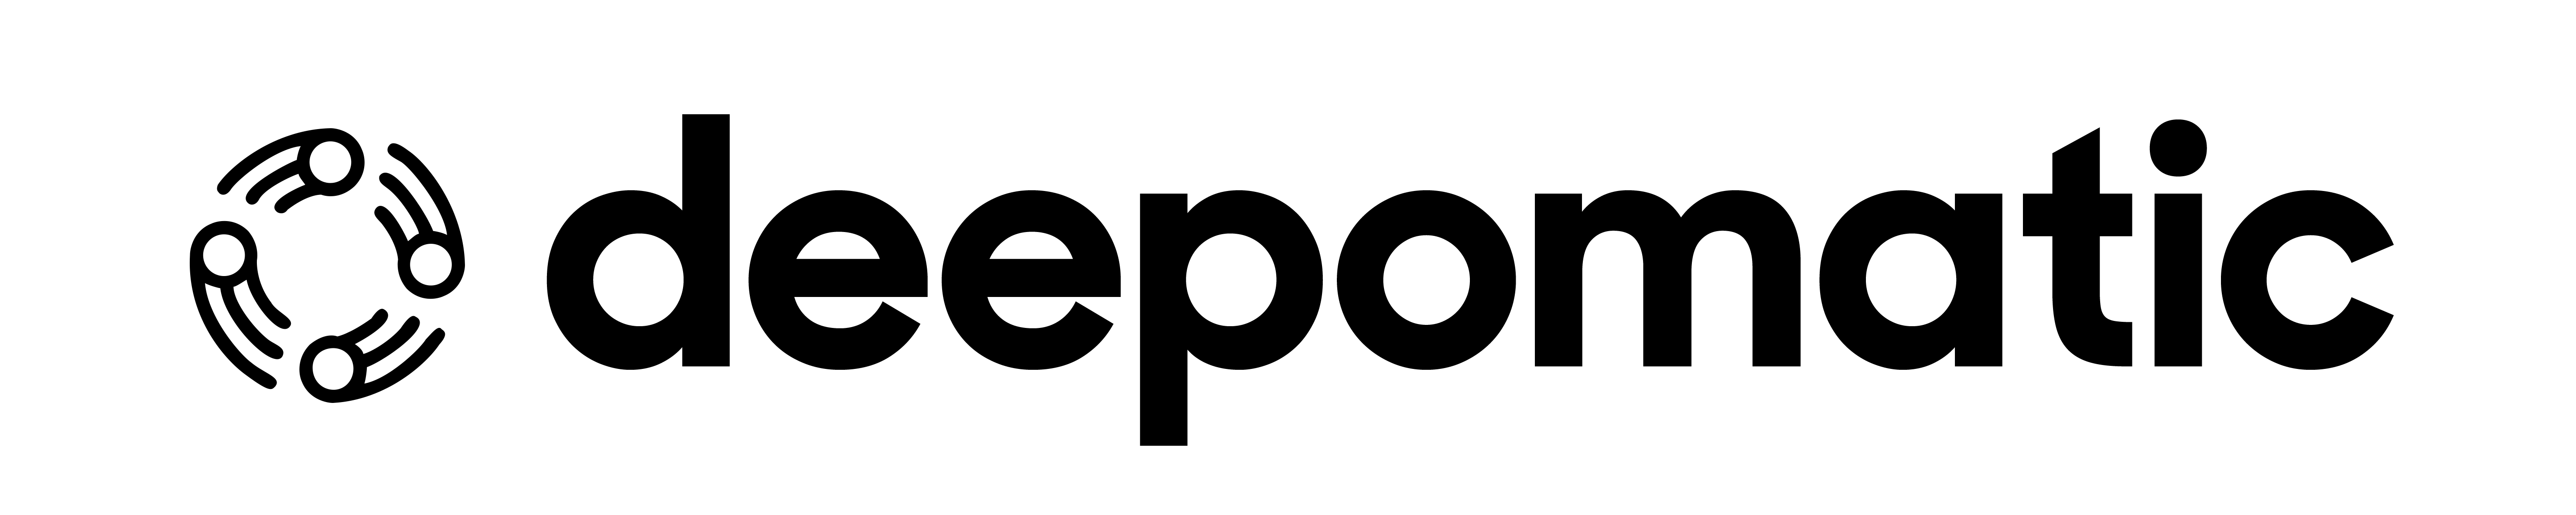 logo de Deepomatic